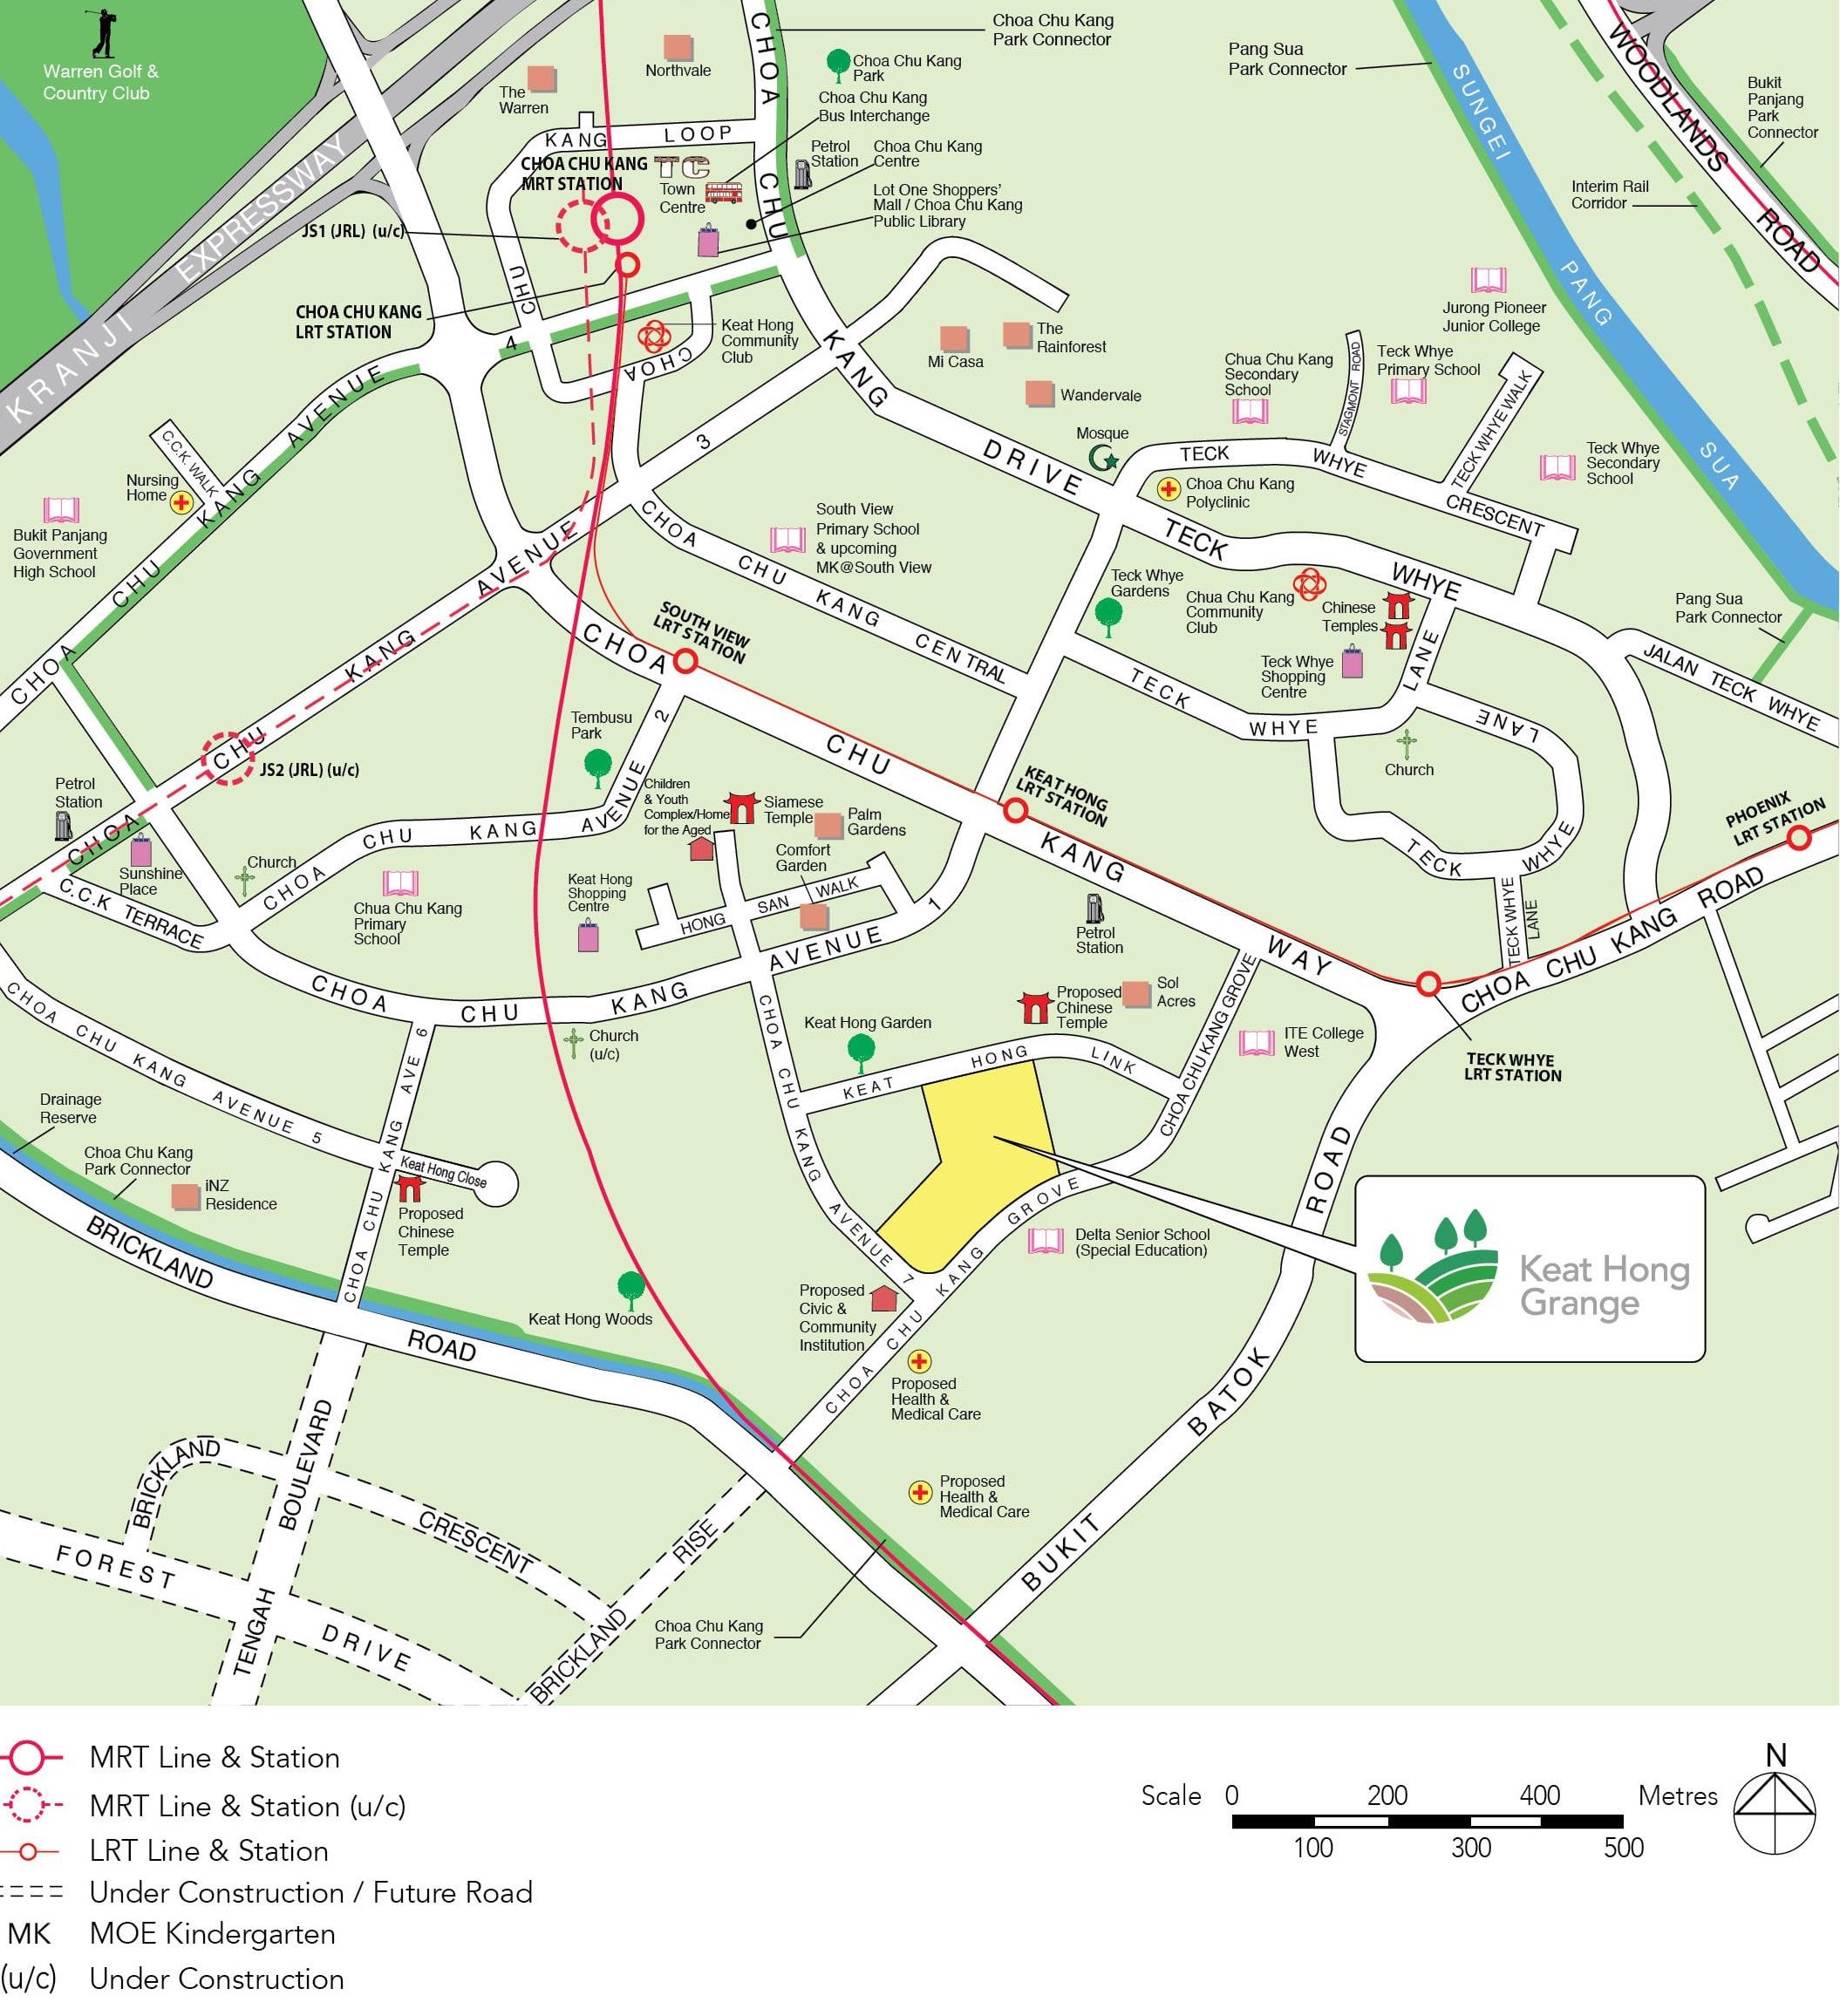 Keat Hong Grange Town Map